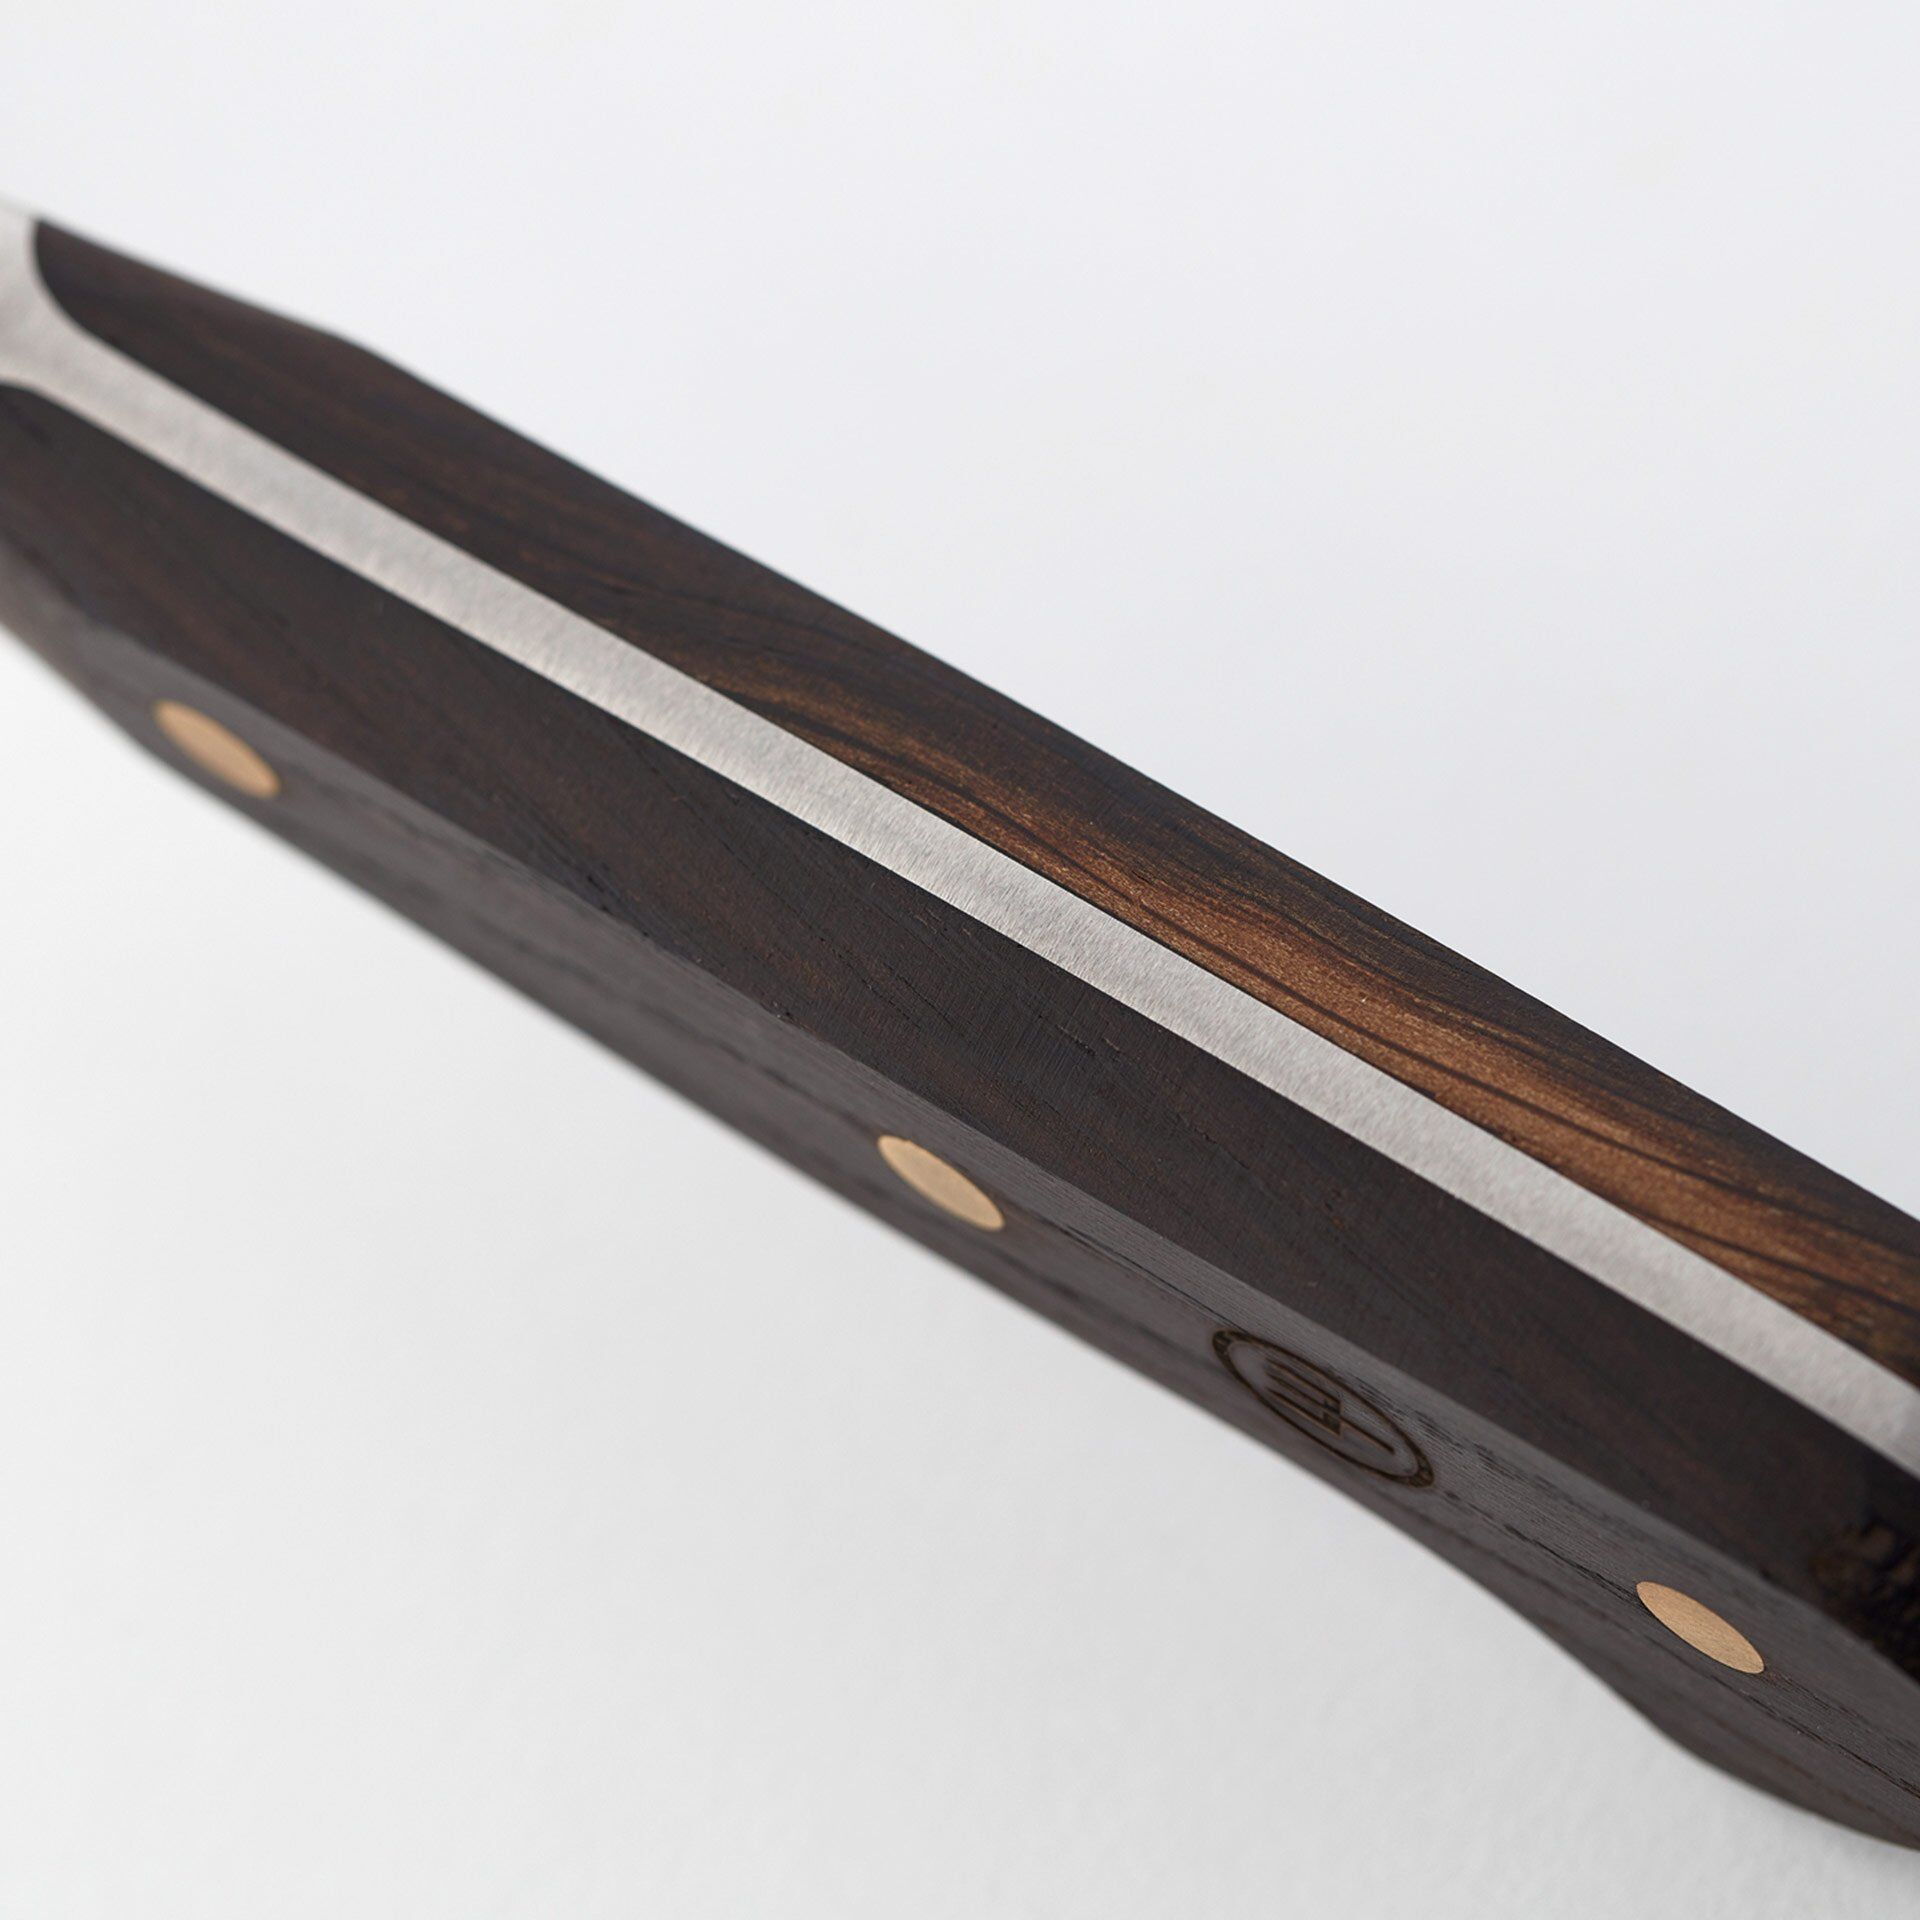 Aufschnittmesser Crafter, Edelstahl, 14cm Klinge